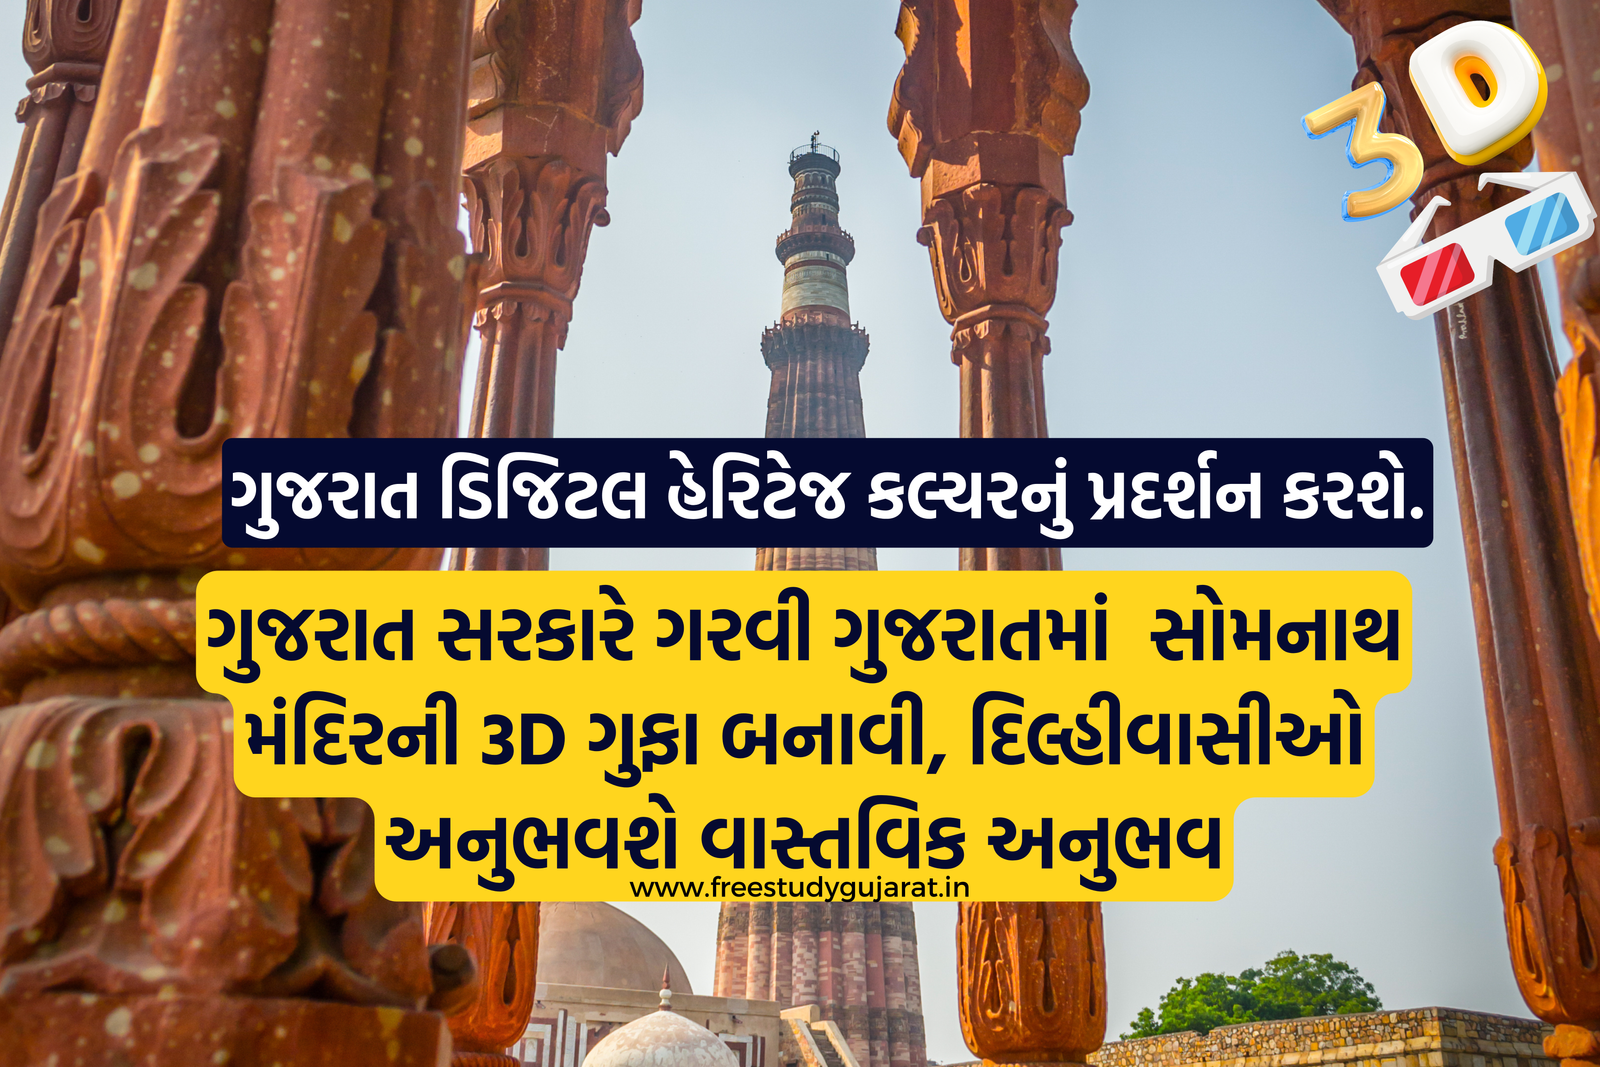 ગુજરાત સરકારે ગરવી ગુજરાતમાં સોમનાથ મંદિરની 3D ગુફા બનાવી